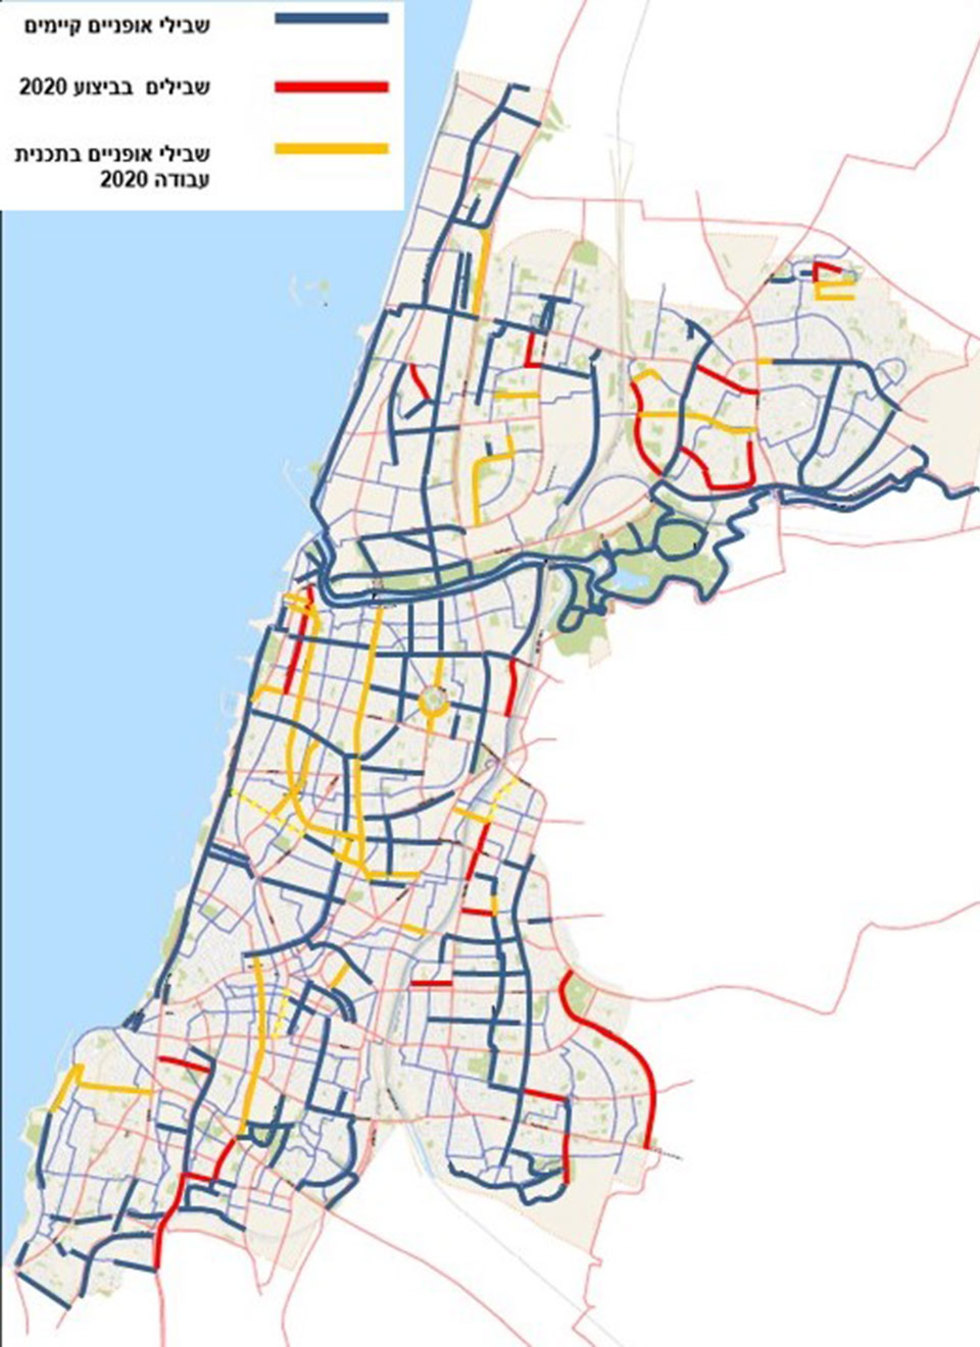 עיריית תל אביב אישרה פרוייקט נרחב להכפלת שבילי האופניים בעיר בתוך חמש שנים ()